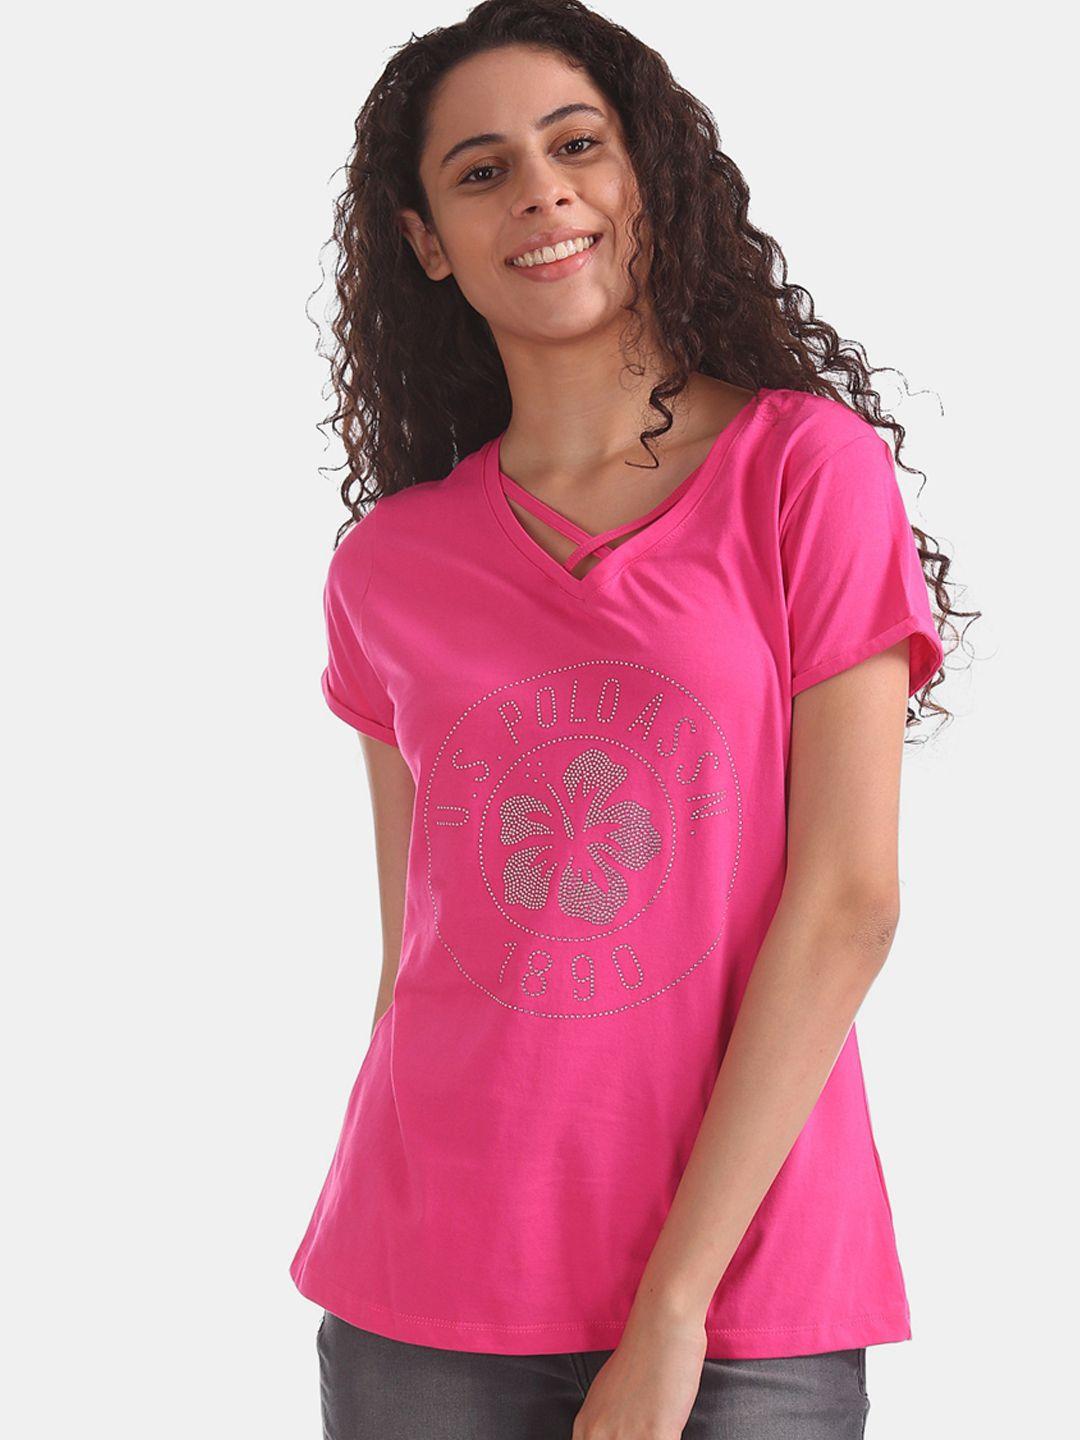 u.s. polo assn. women pink solid v-neck t-shirt